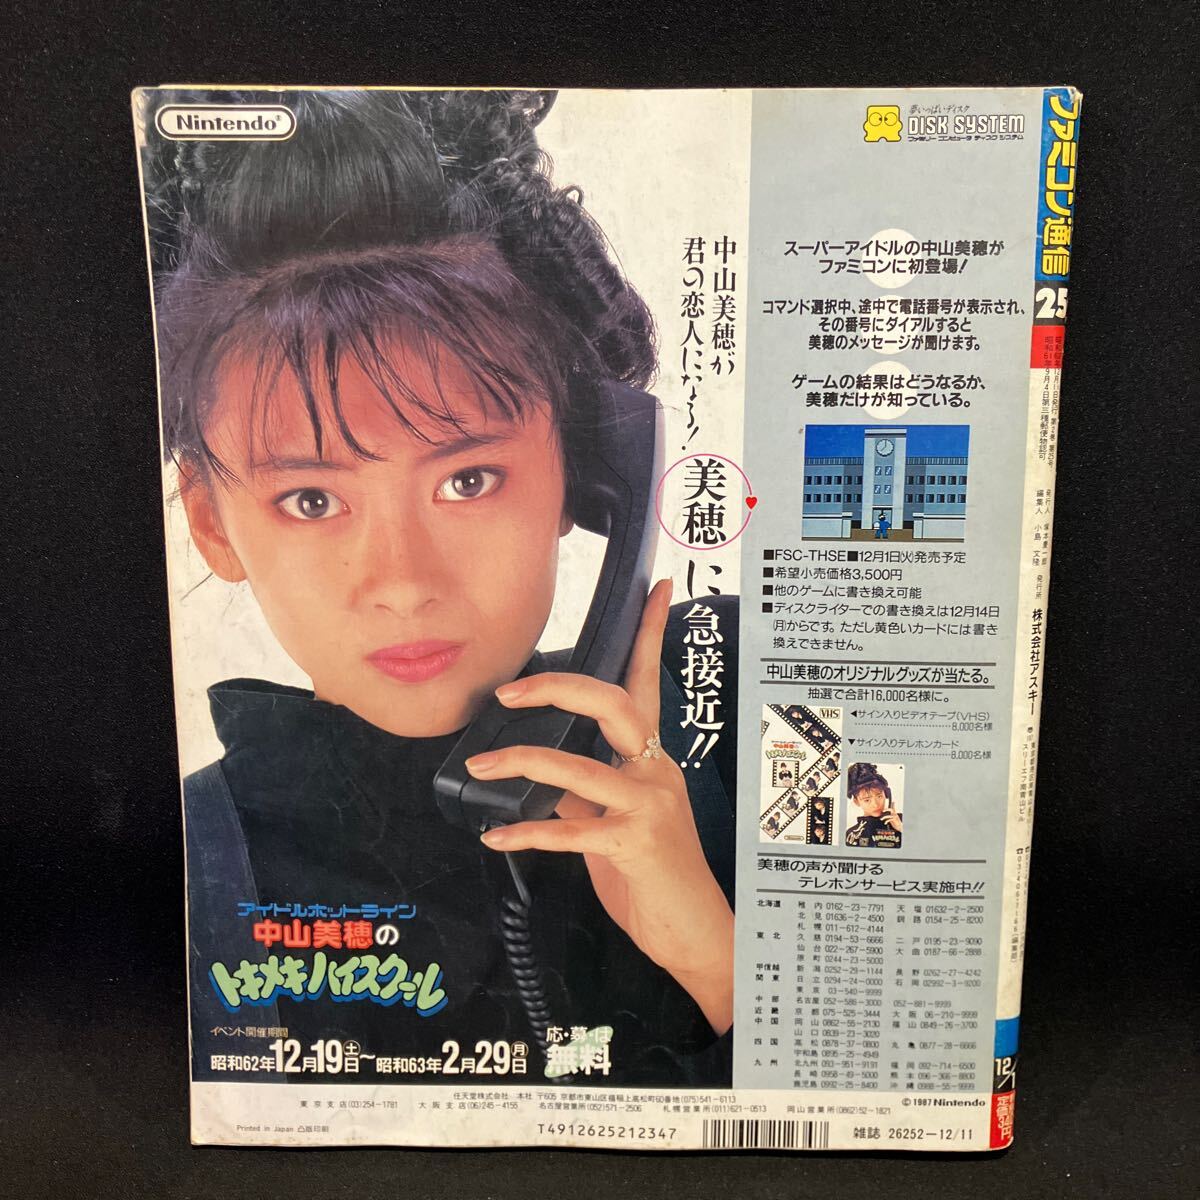 ファミコン通信 1987年12月11日 第2巻第25号の画像2